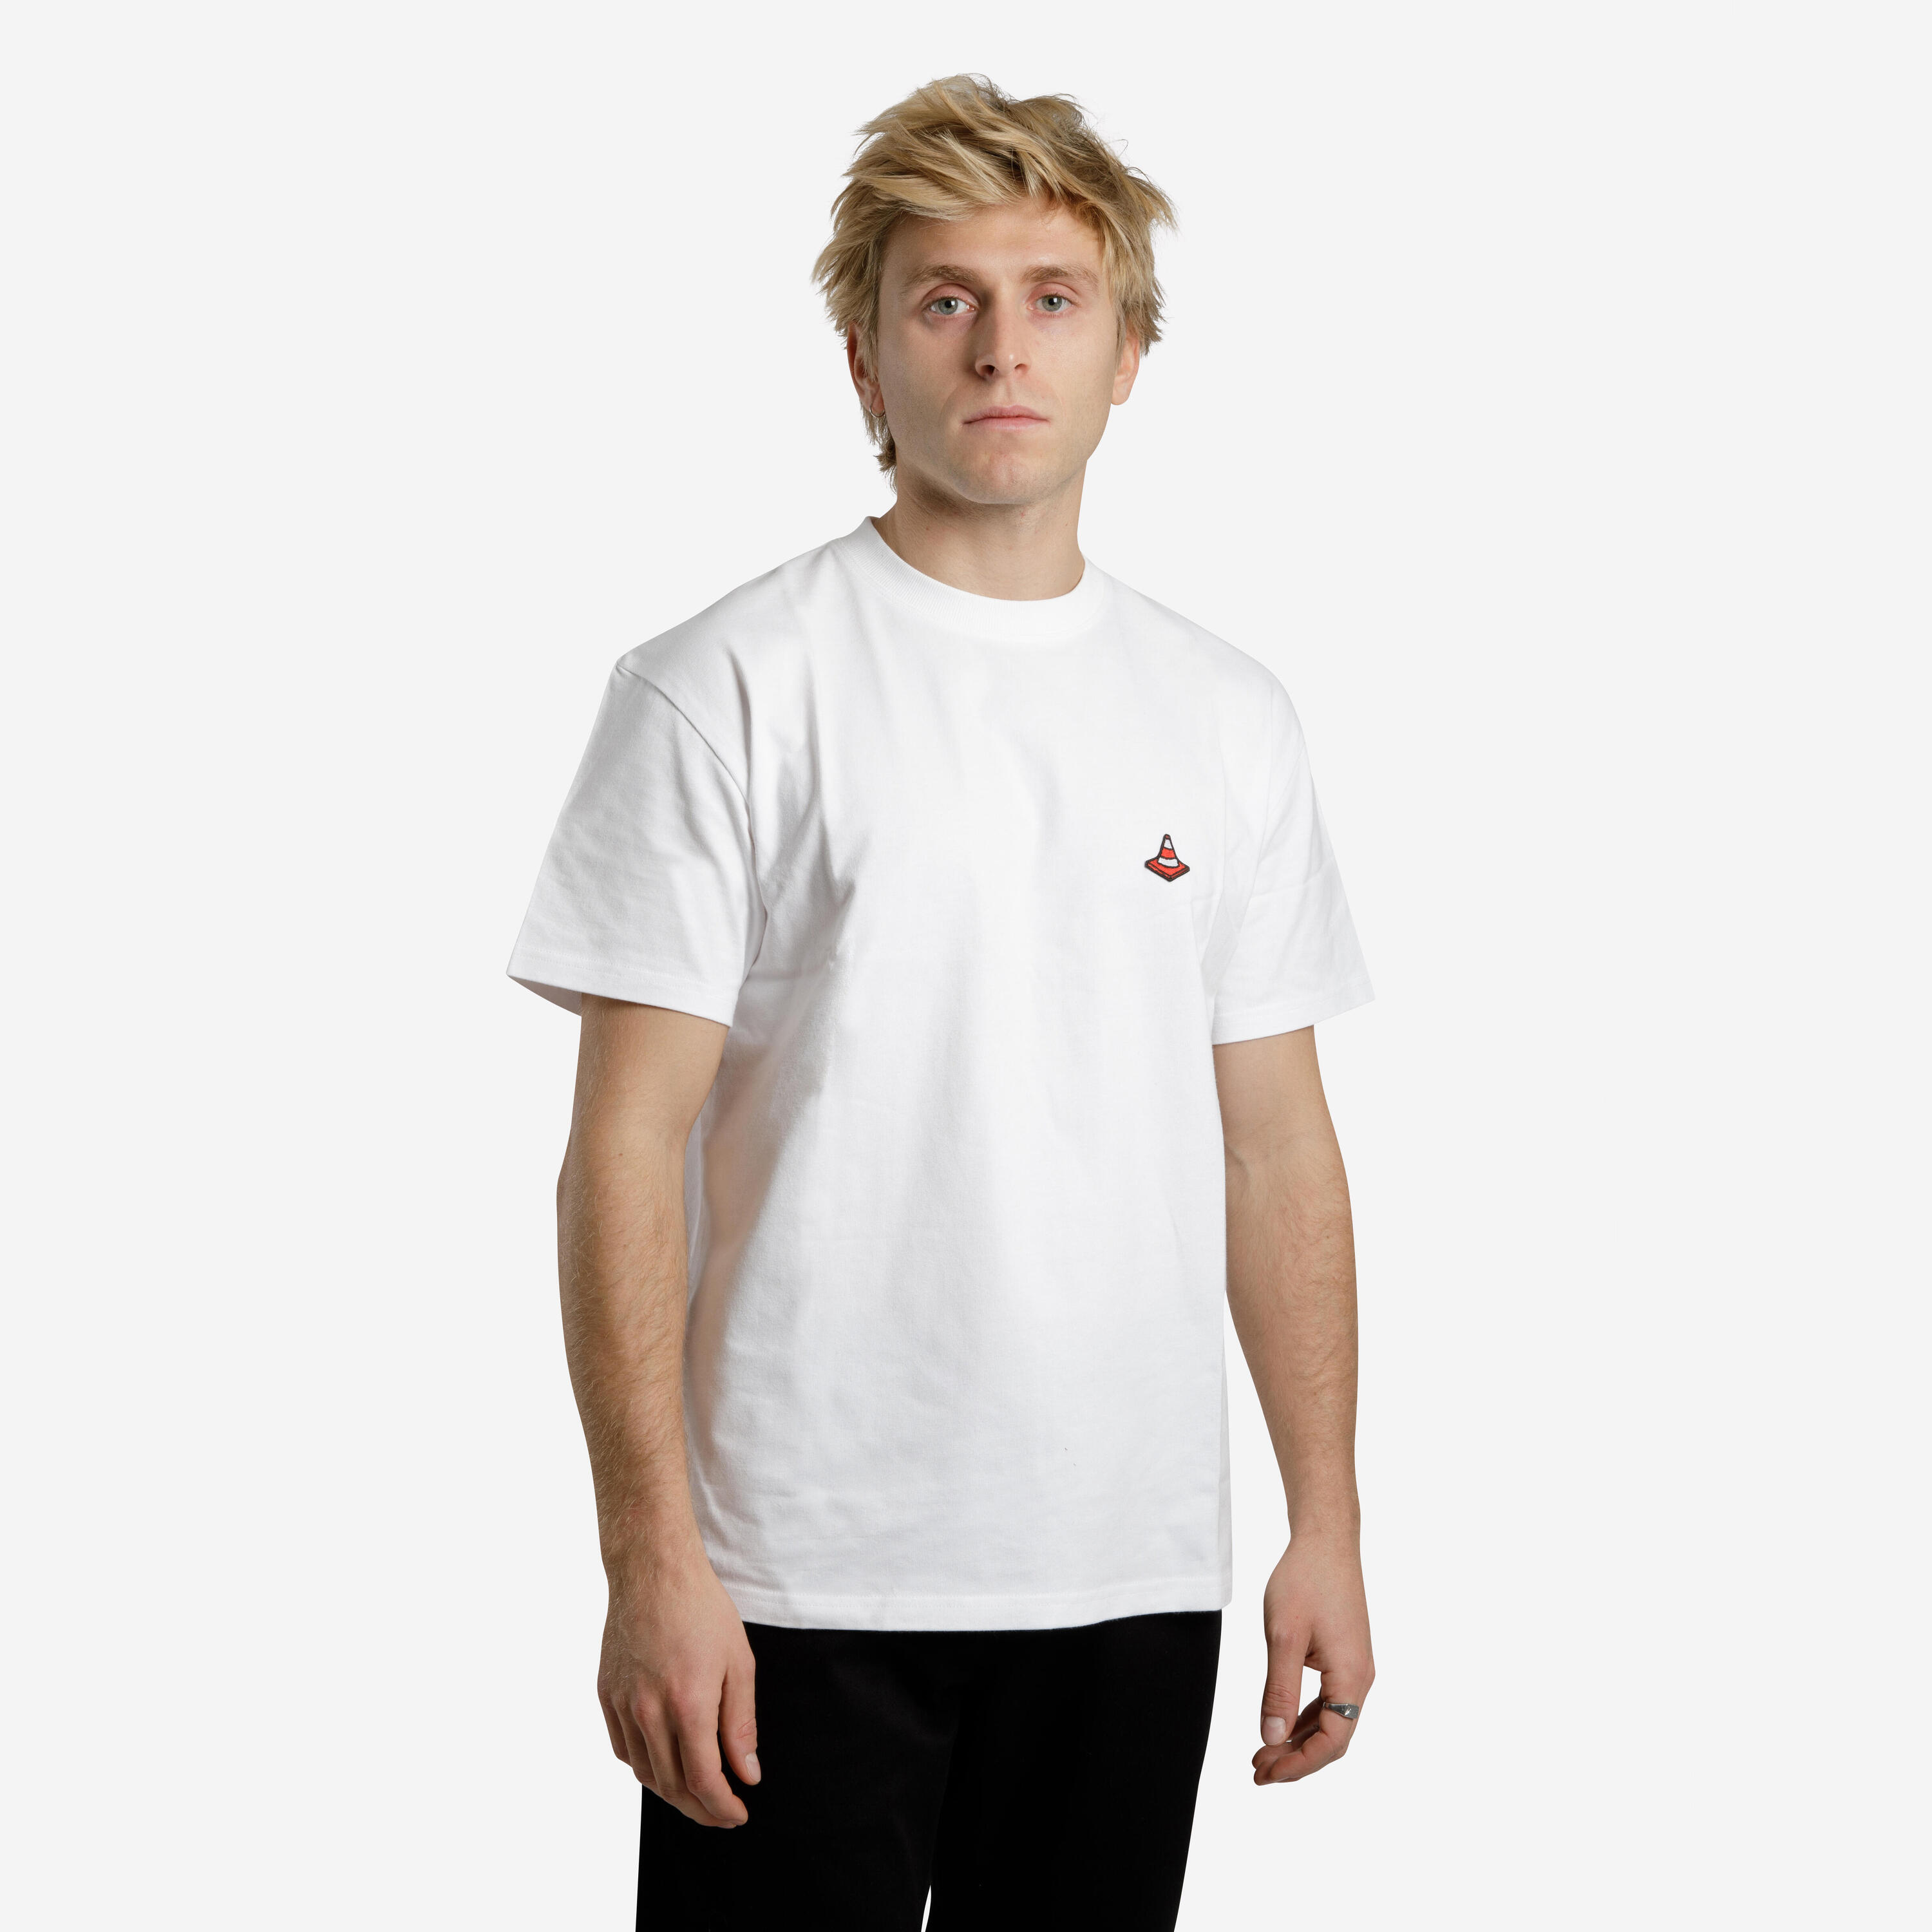 OXELO Short-Sleeved Skateboard T-Shirt TS500 Traffic - White